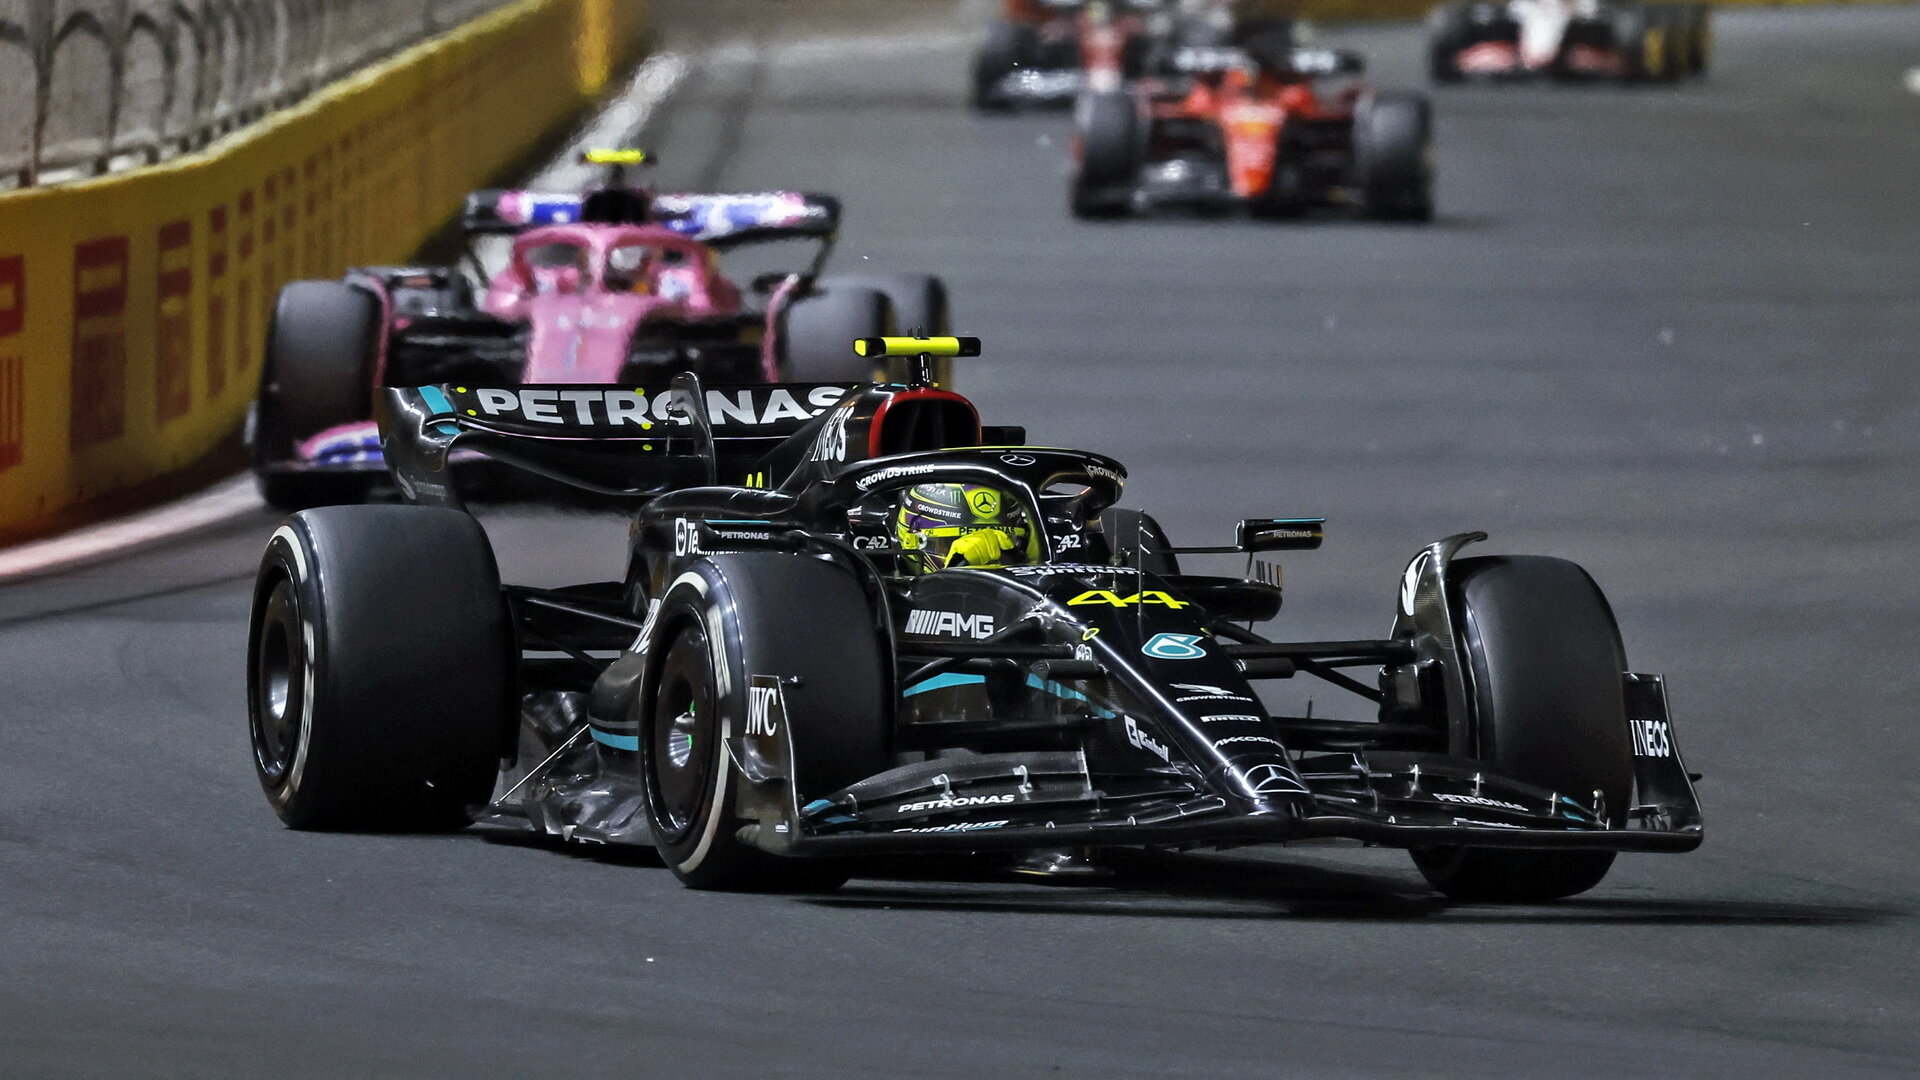 Lewis Hamilton v závodě v Saúdské Arábii